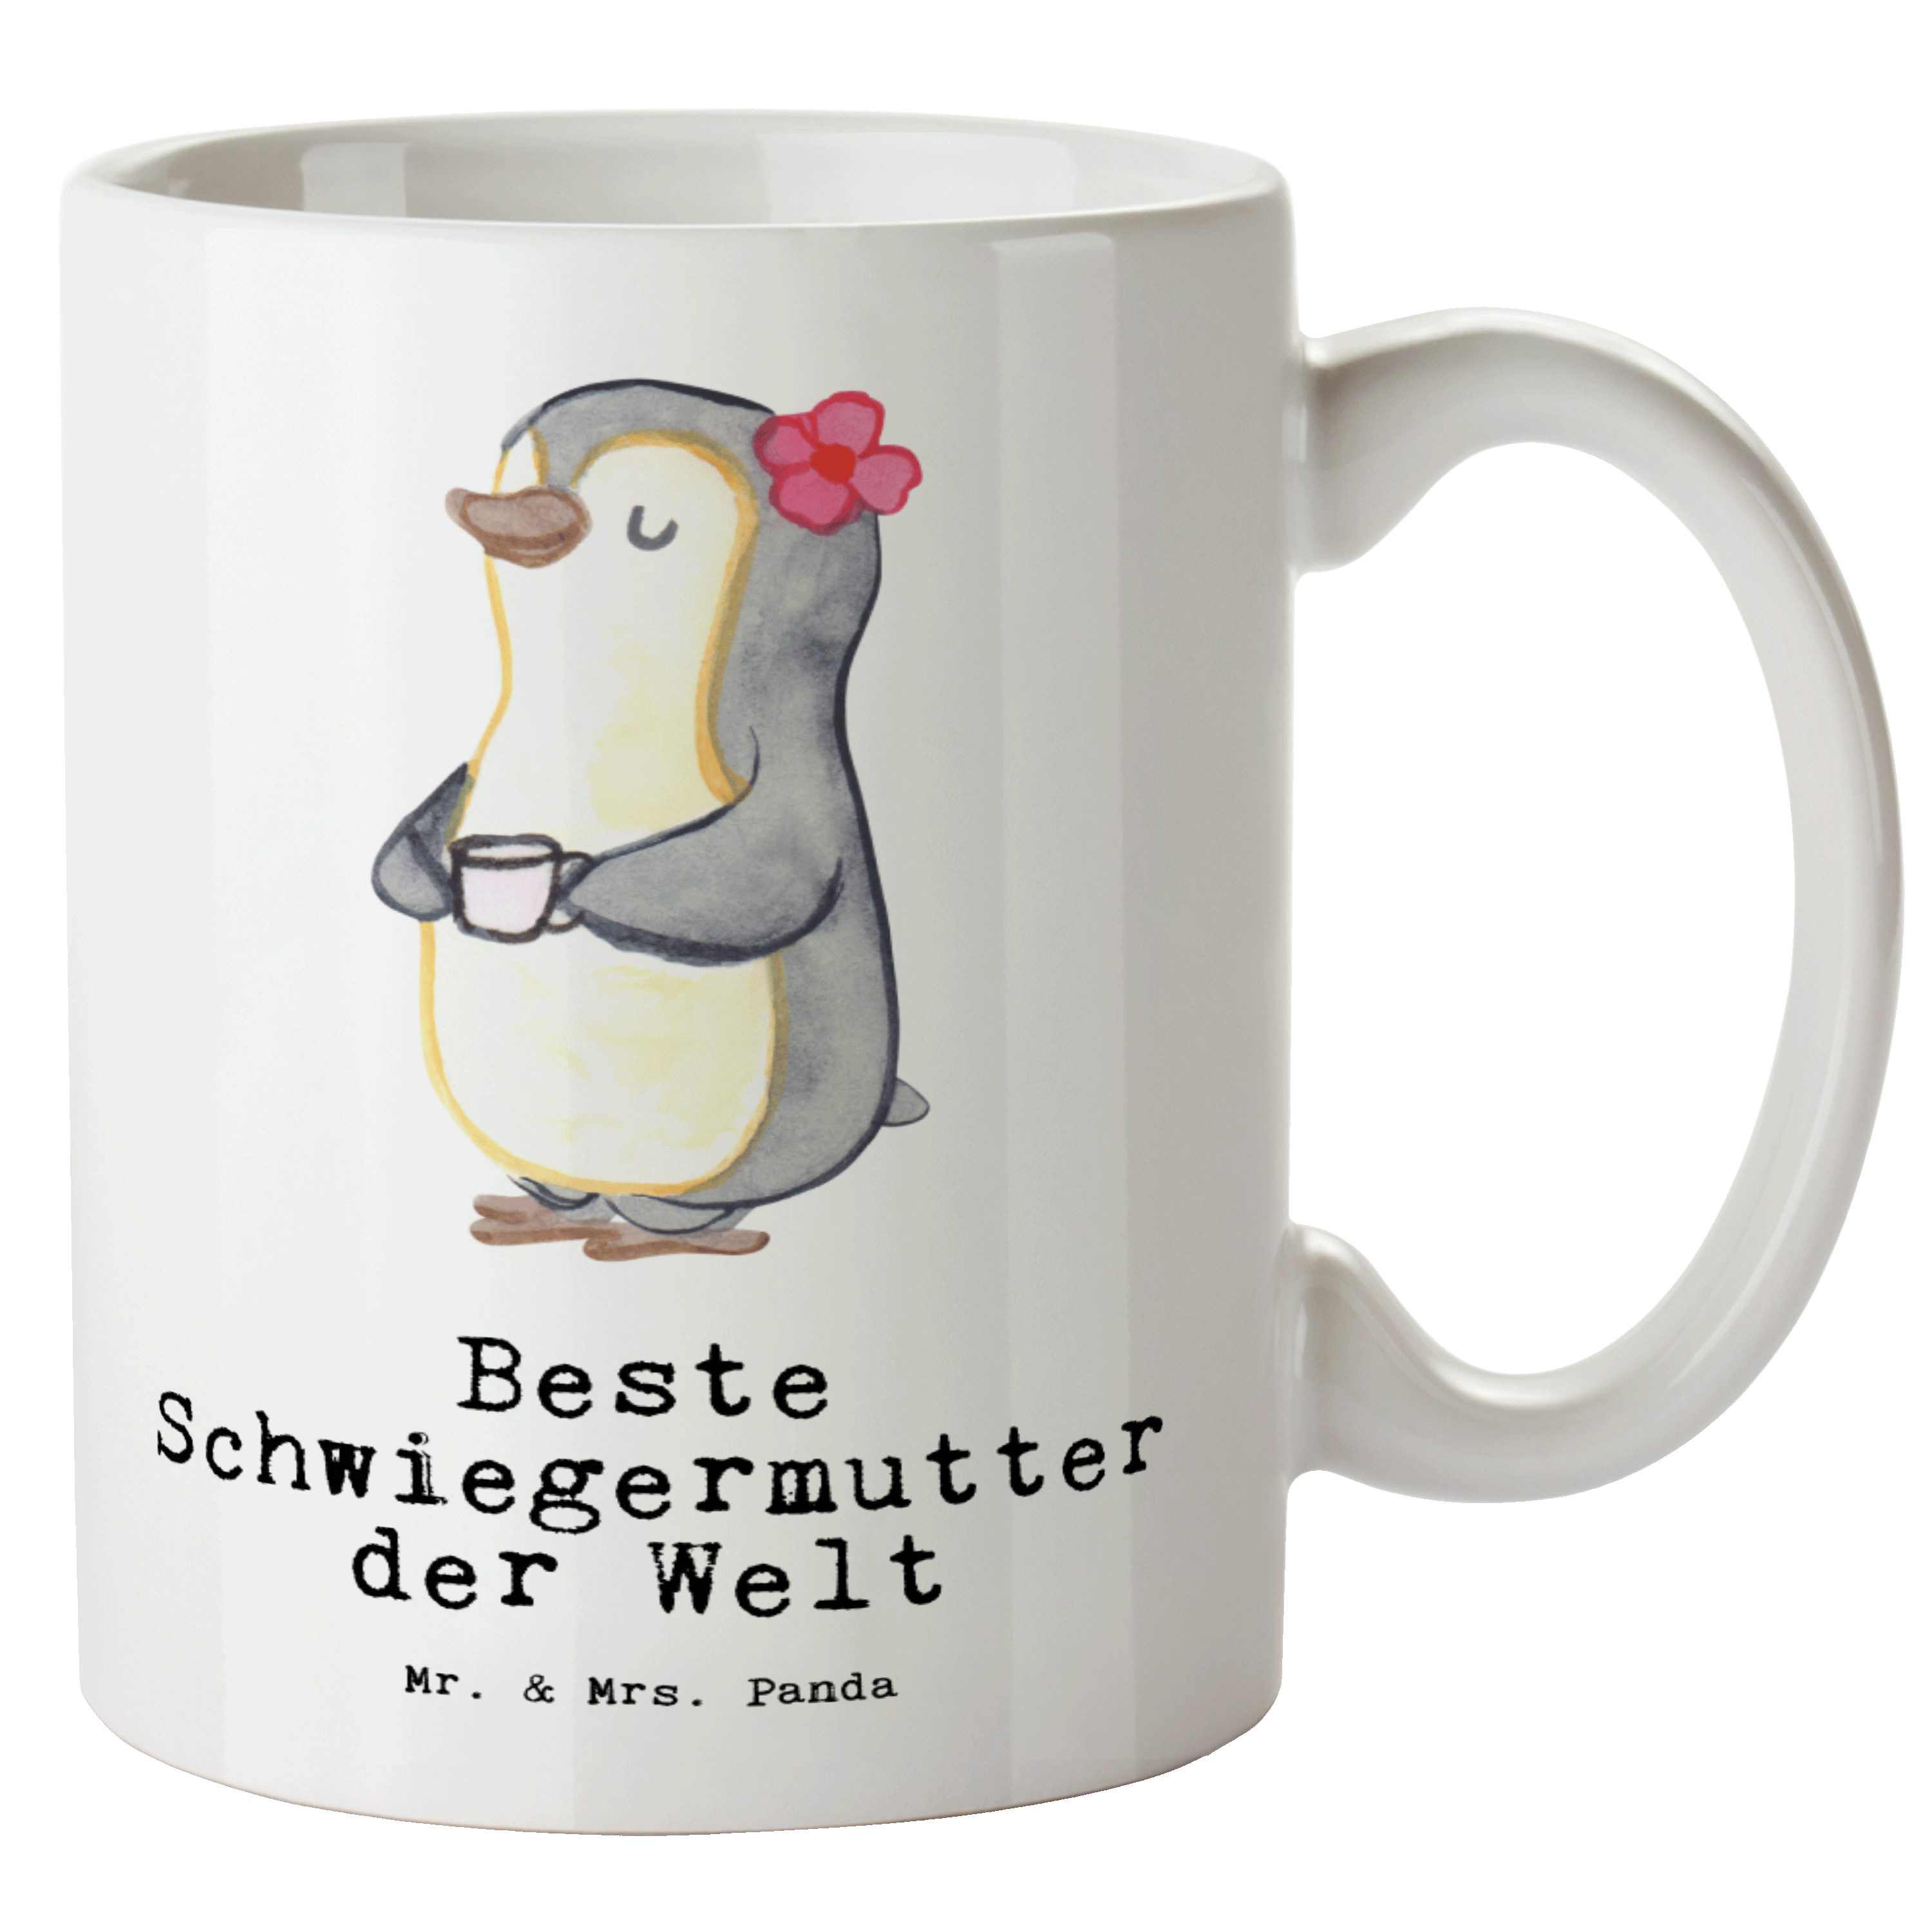 Mr. & Mrs. Panda der - Pinguin Danke, Beste Schwiegermutter - Keramik Welt Tasse Geschenk, Gesc, Tasse Weiß XL